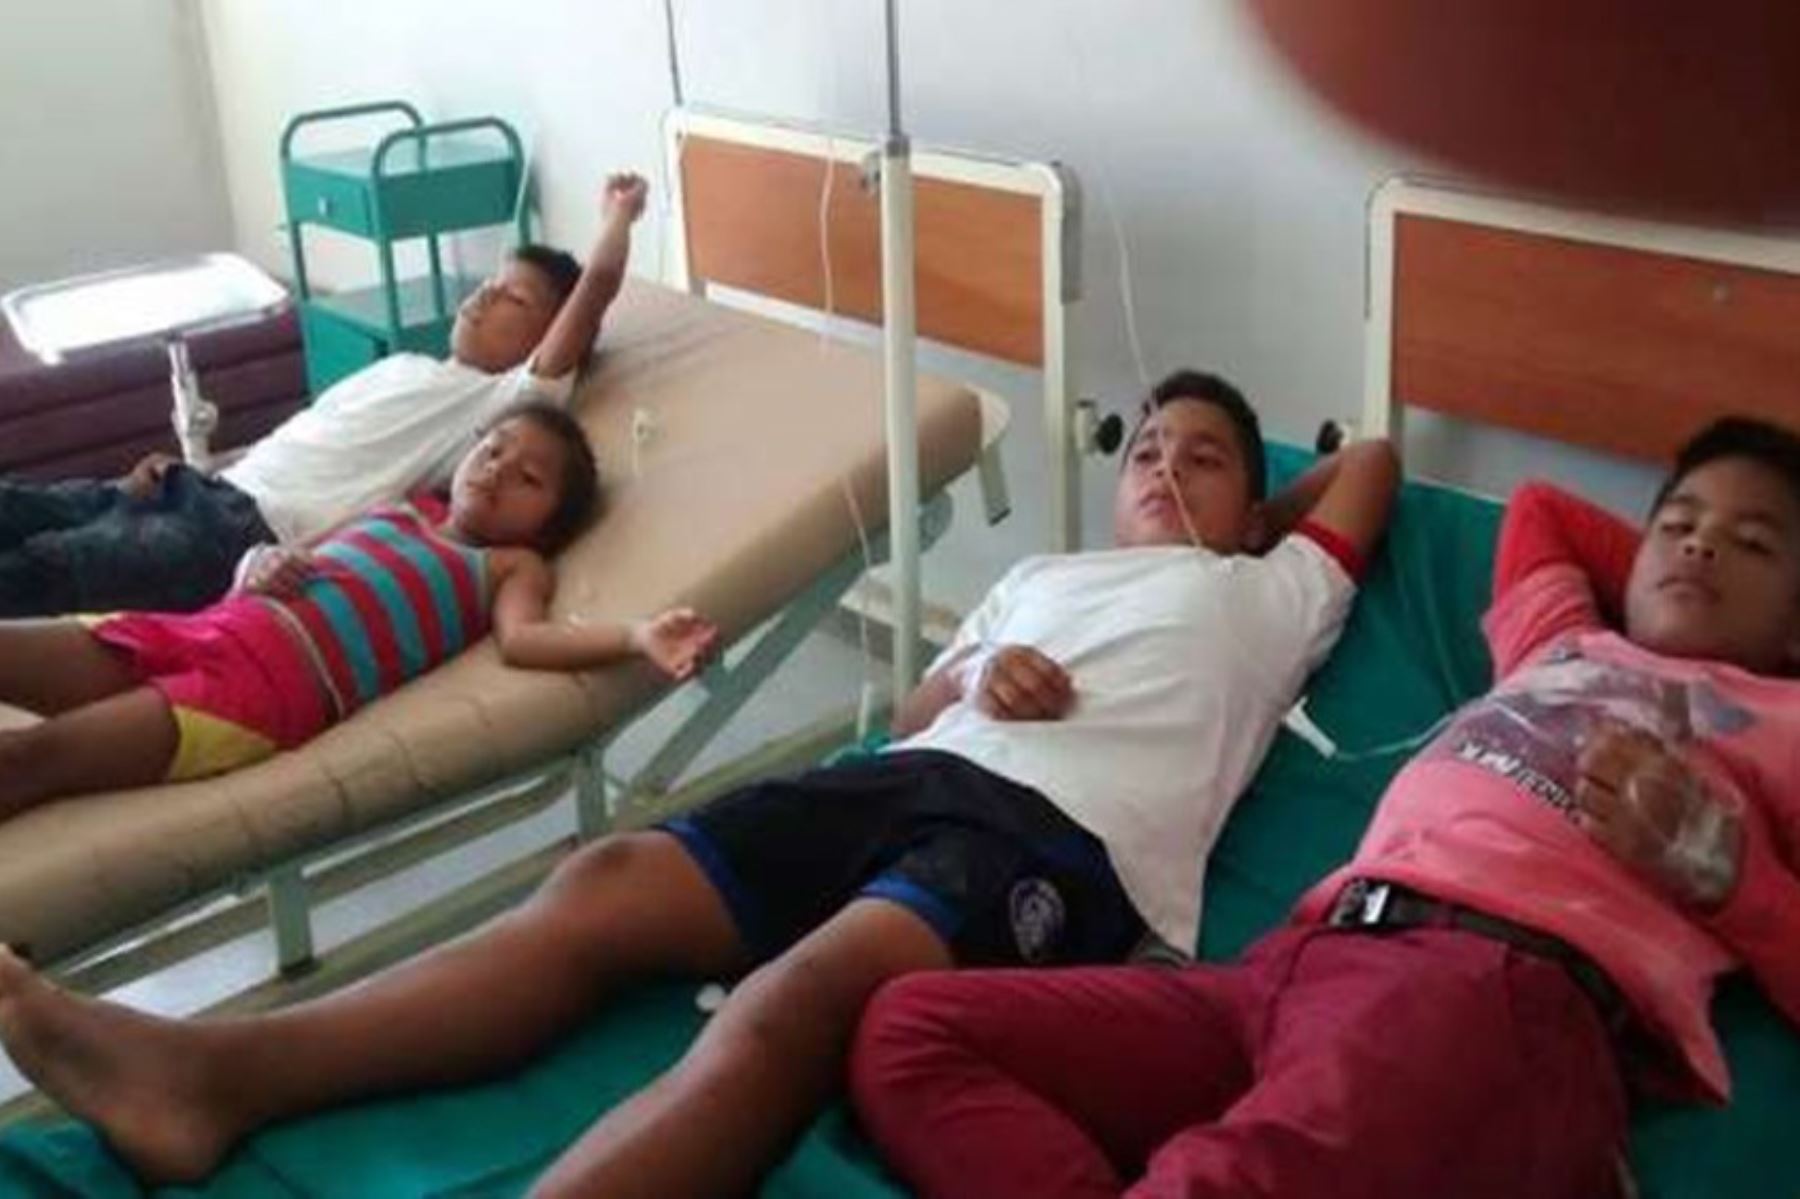 Dan de alta a escolares afectados por posible intoxicación en distirto de Saposoa, en San Martín. ANDINA